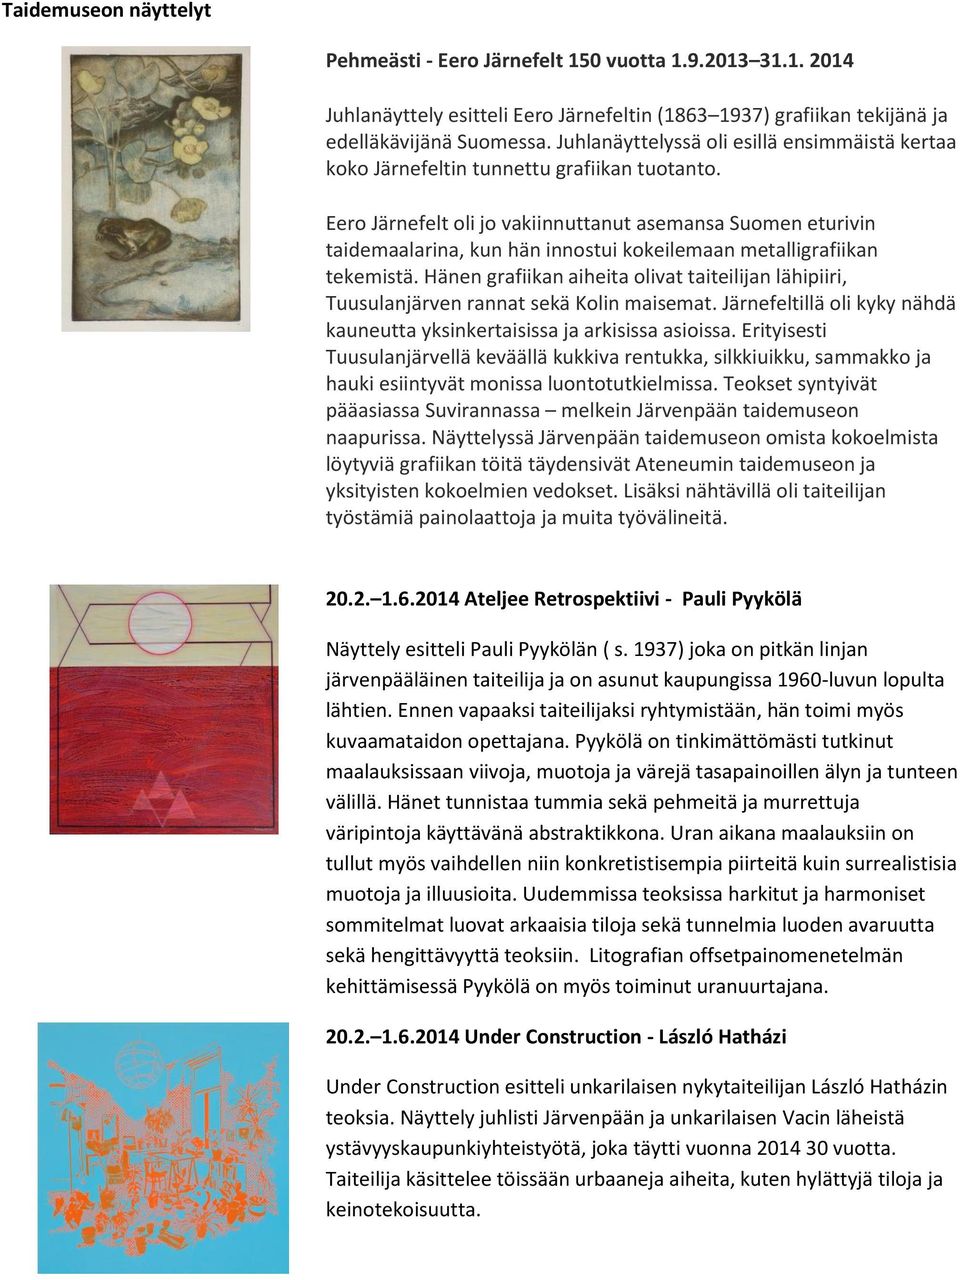 Eero Järnefelt oli jo vakiinnuttanut asemansa Suomen eturivin taidemaalarina, kun hän innostui kokeilemaan metalligrafiikan tekemistä.